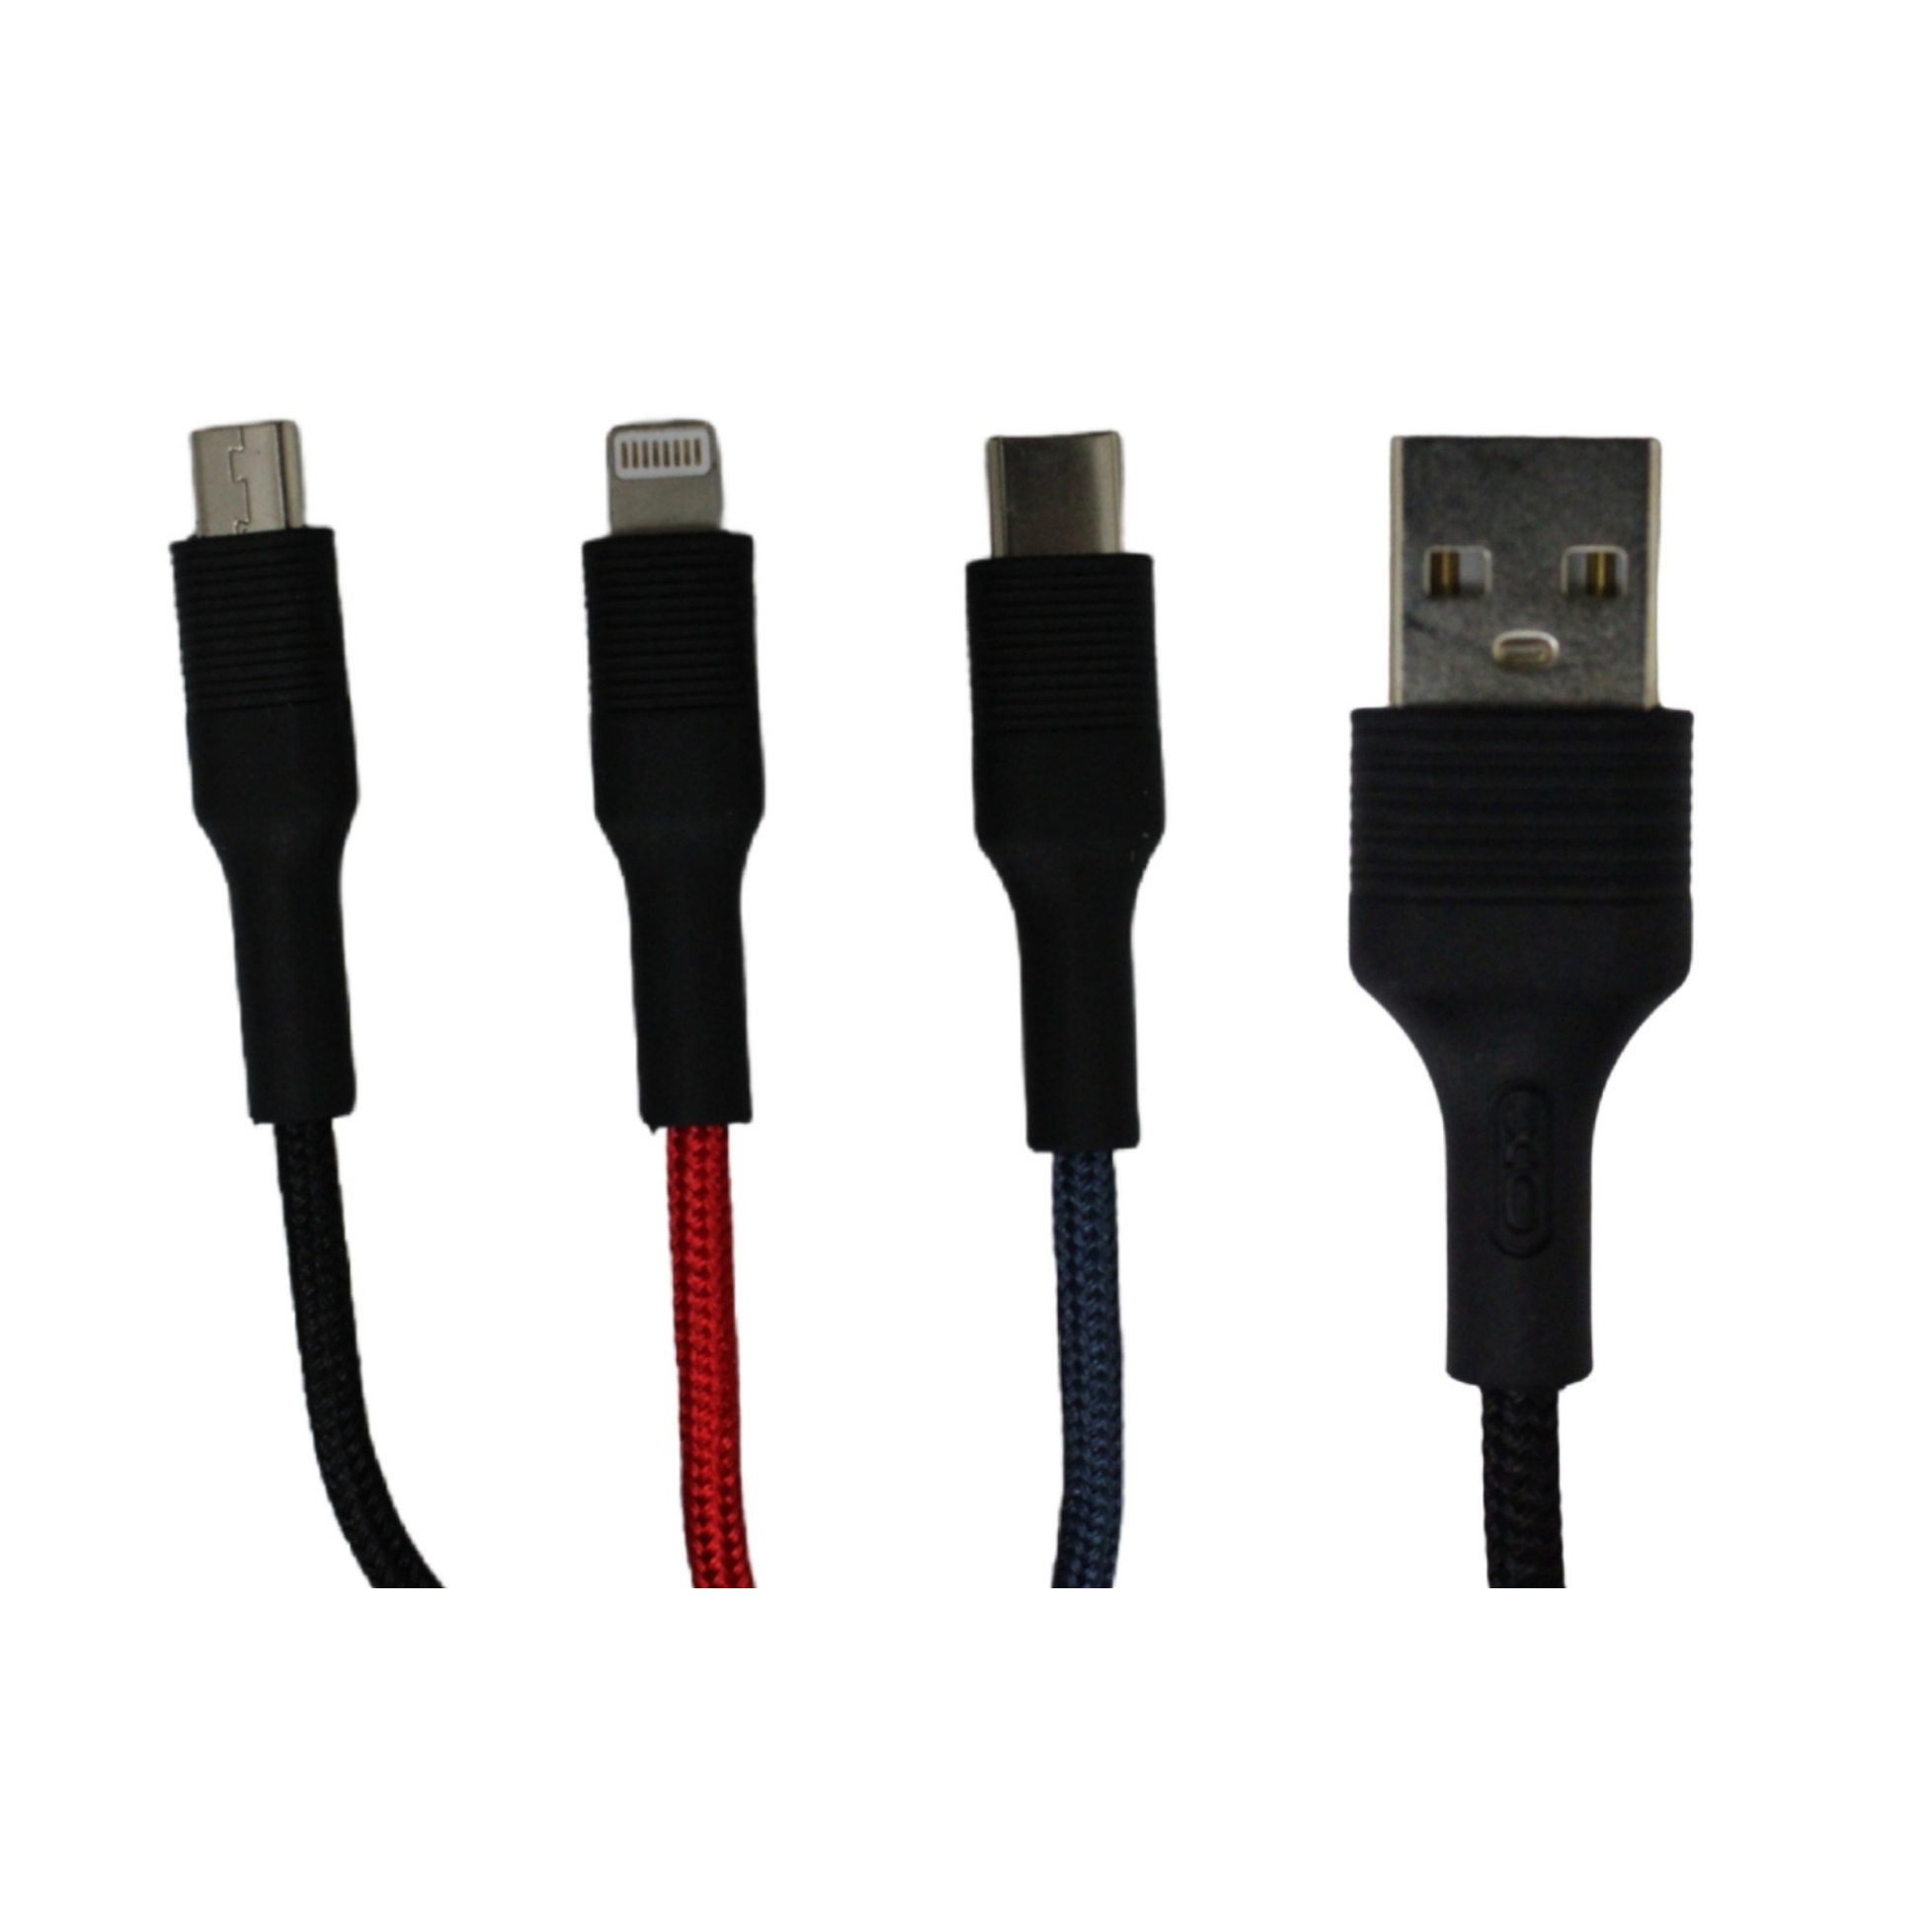 کابل تبدیل USB به microUSB / USB-C / لایتینینگ ایکس او مدل NB54 طول 1 متر